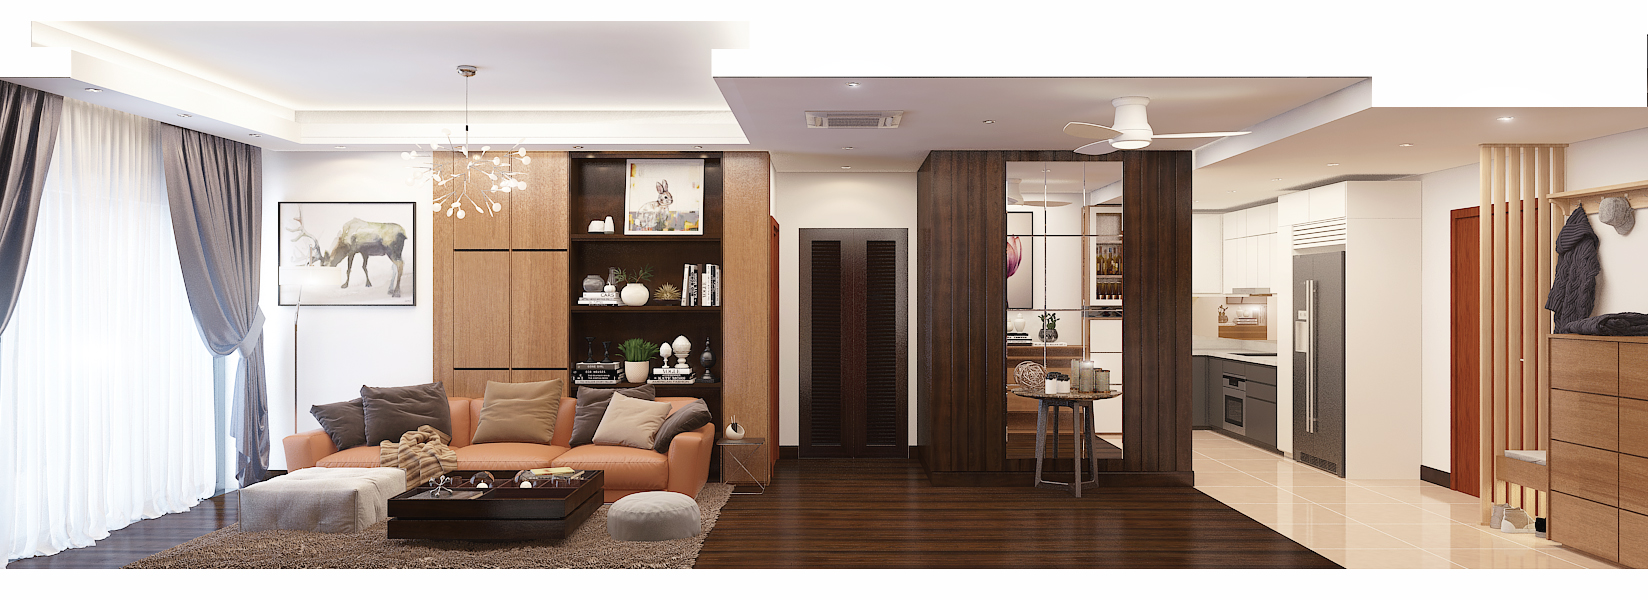 thiết kế nội thất chung cư tại Hà Nội Căn hộ chung cư GoldMark  8 1562020151